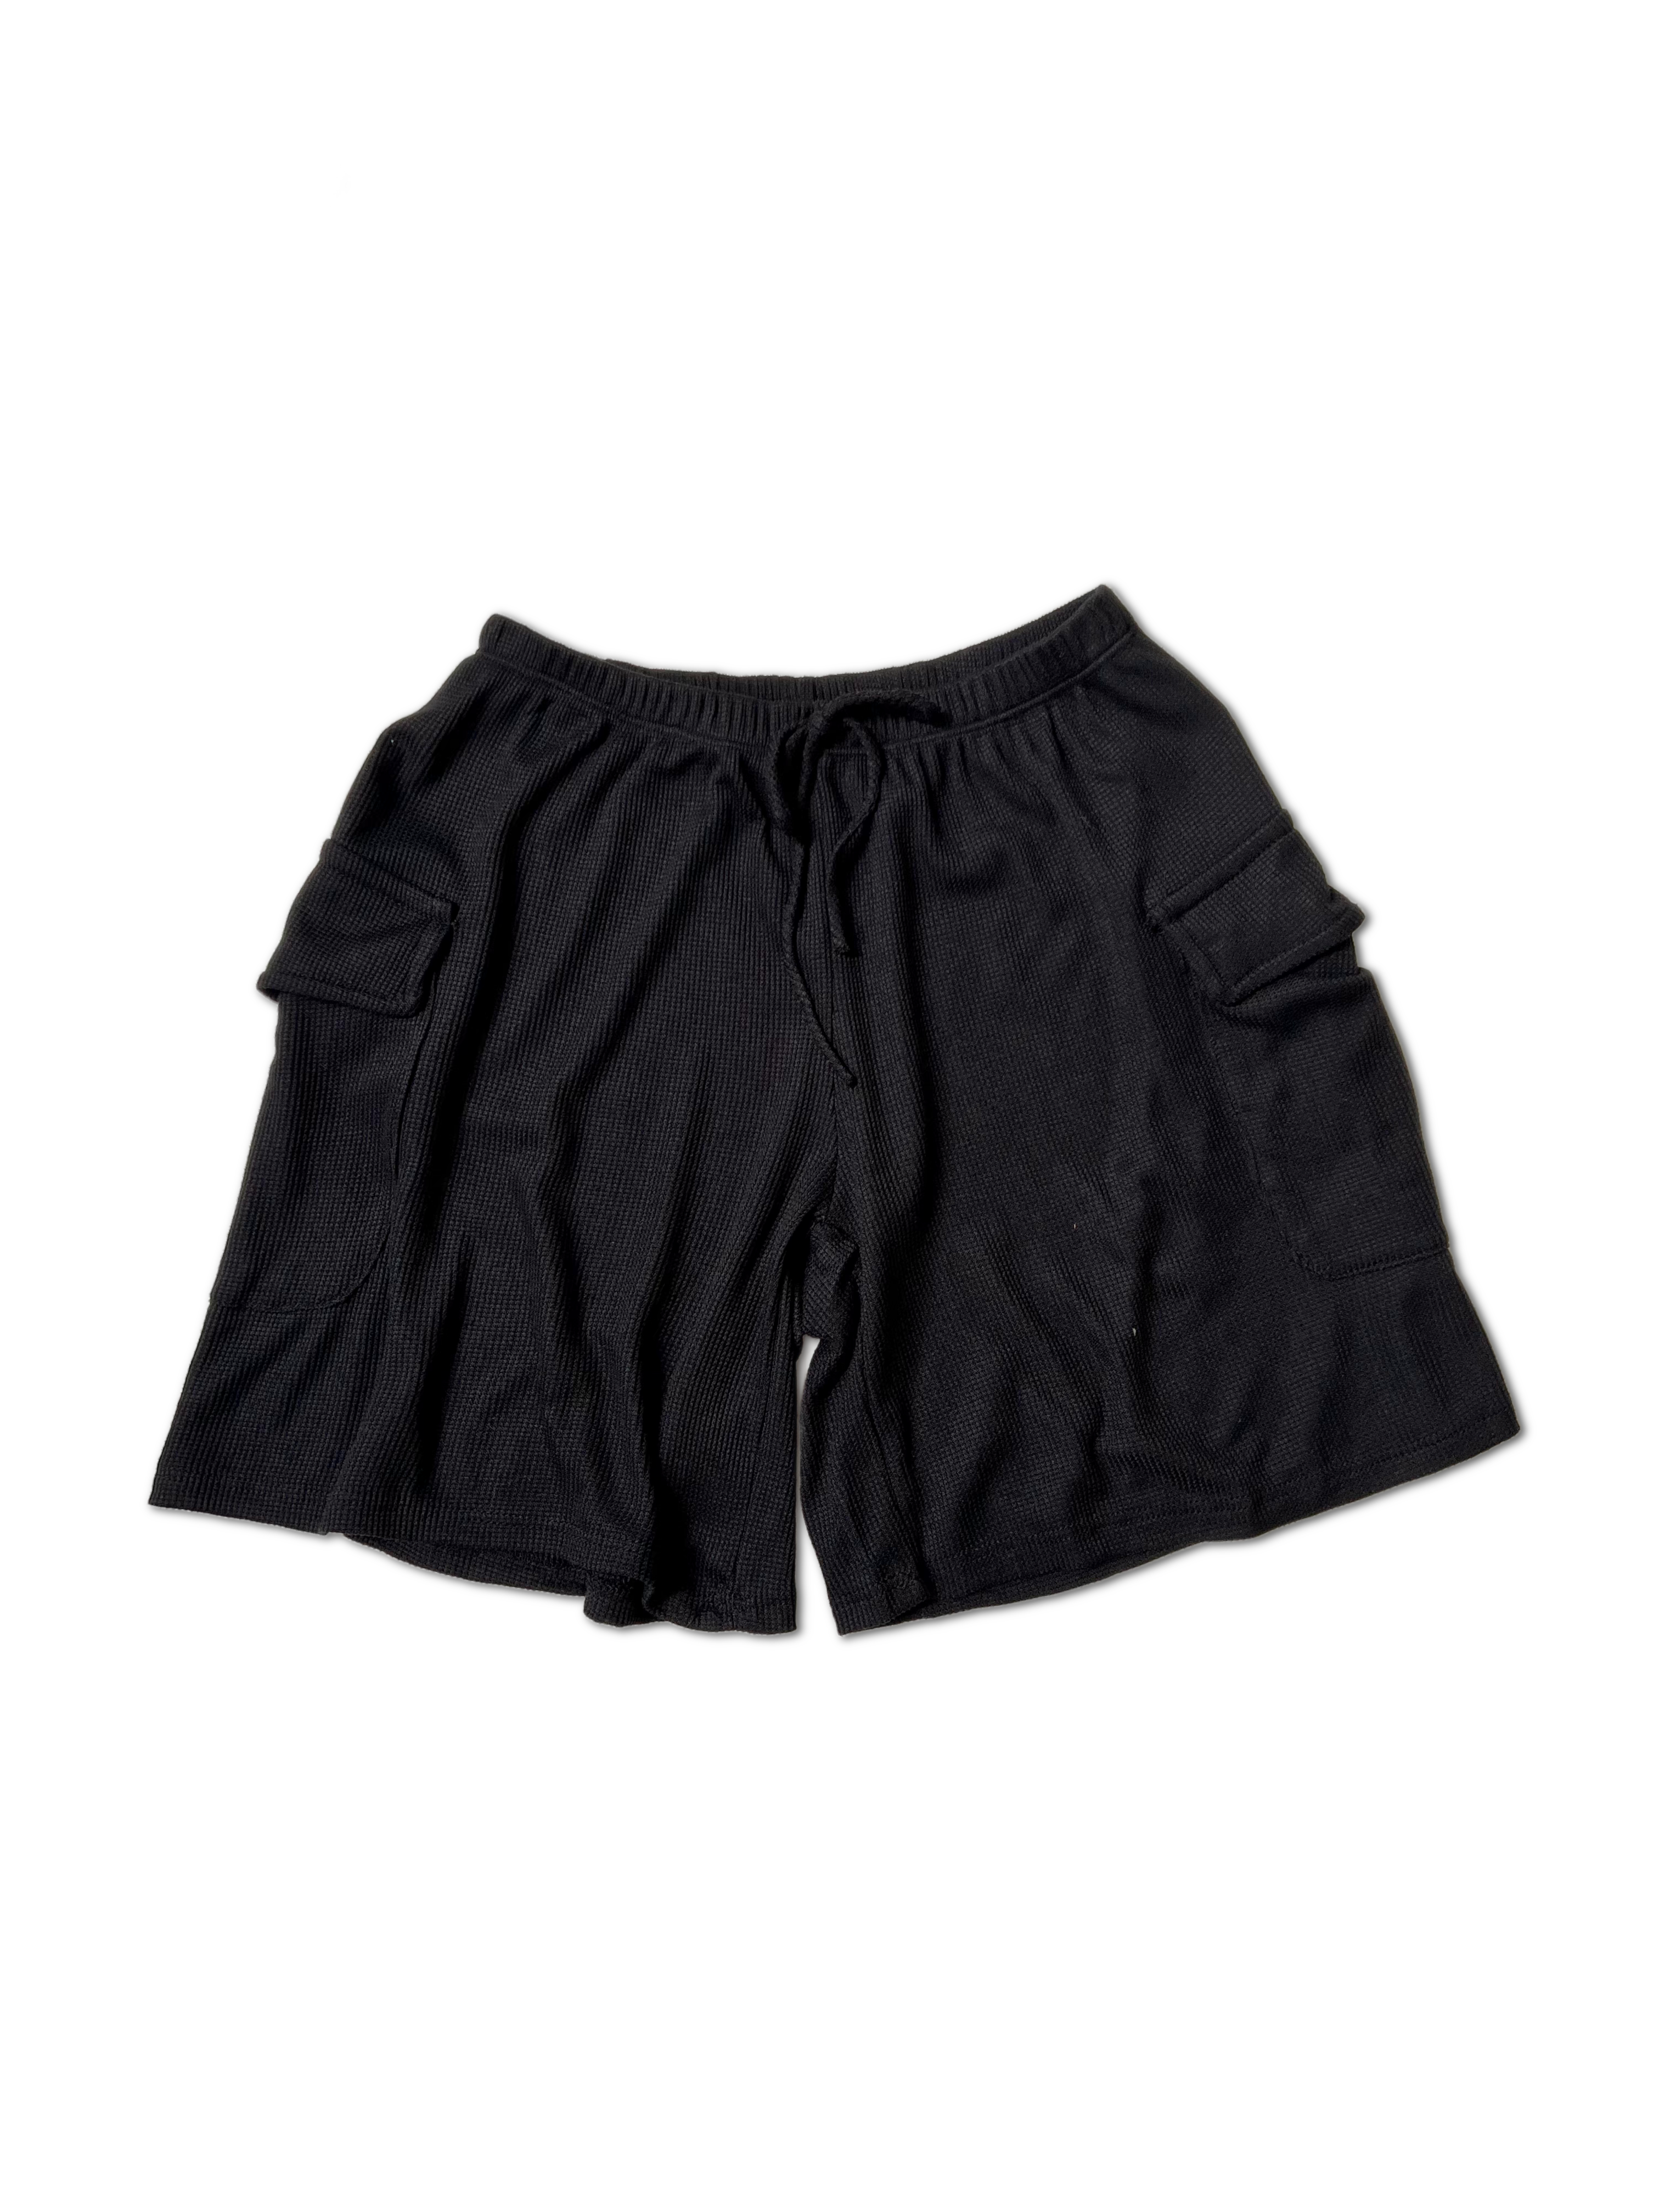 Cozy in Cargo - Shorts  Boutique Simplified   